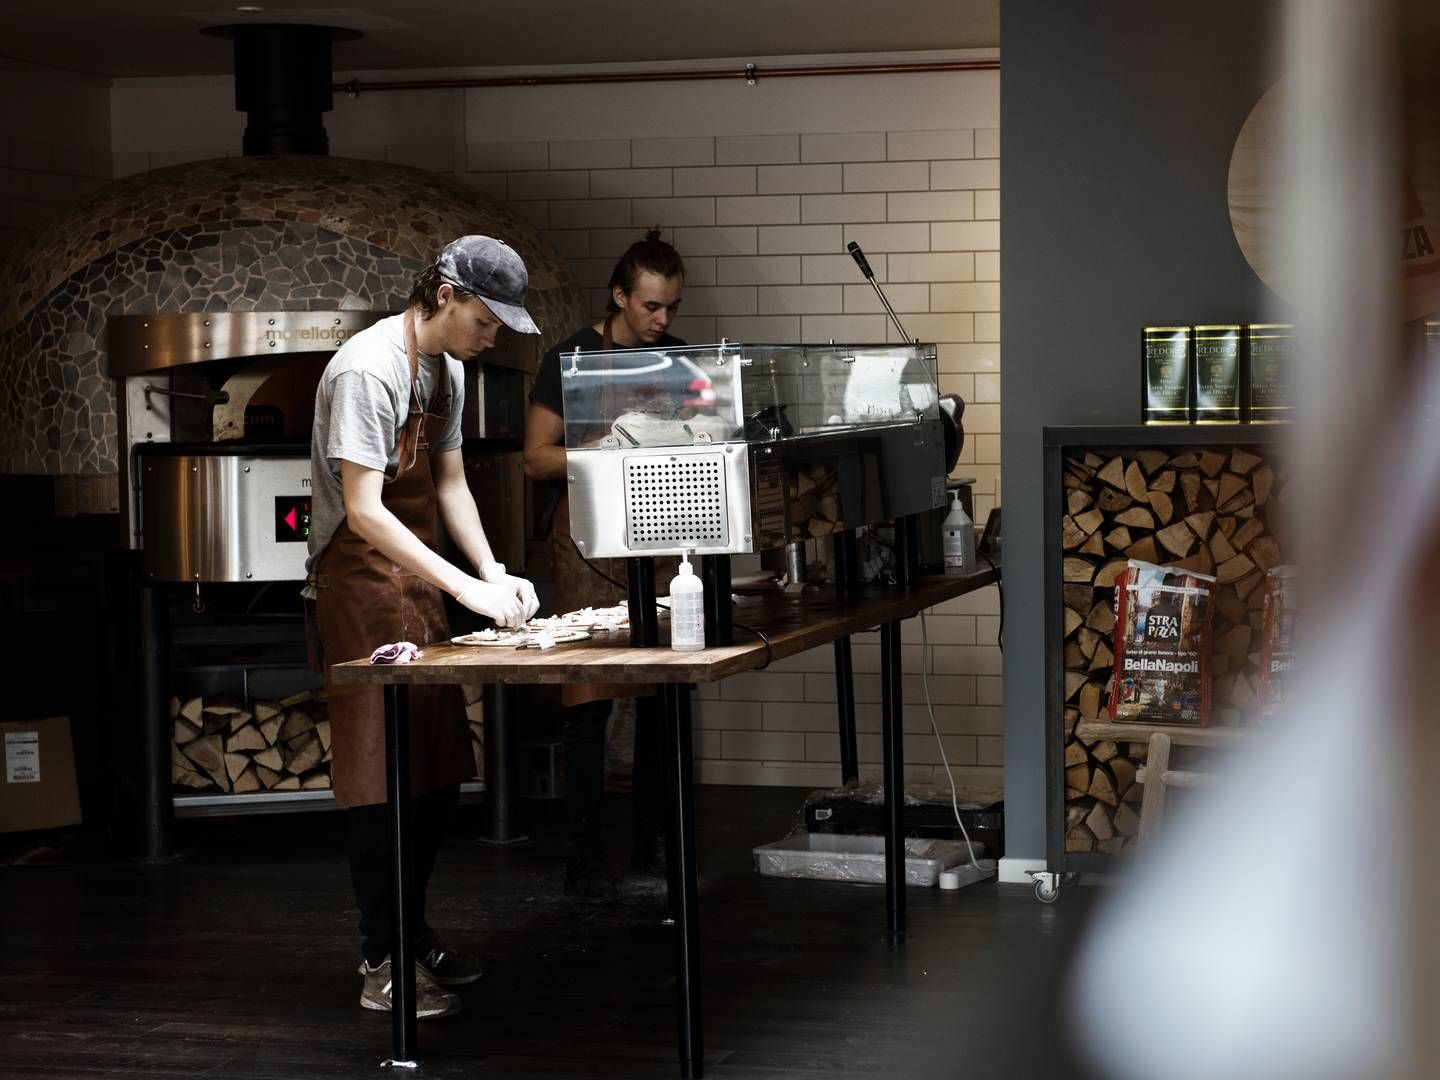 Ild Pizza blev tirsdag meldt konkurs. Der er dog interesse for at viderebringe kæden, fortæller kurator. | Foto: Morten Lau-Nielsen